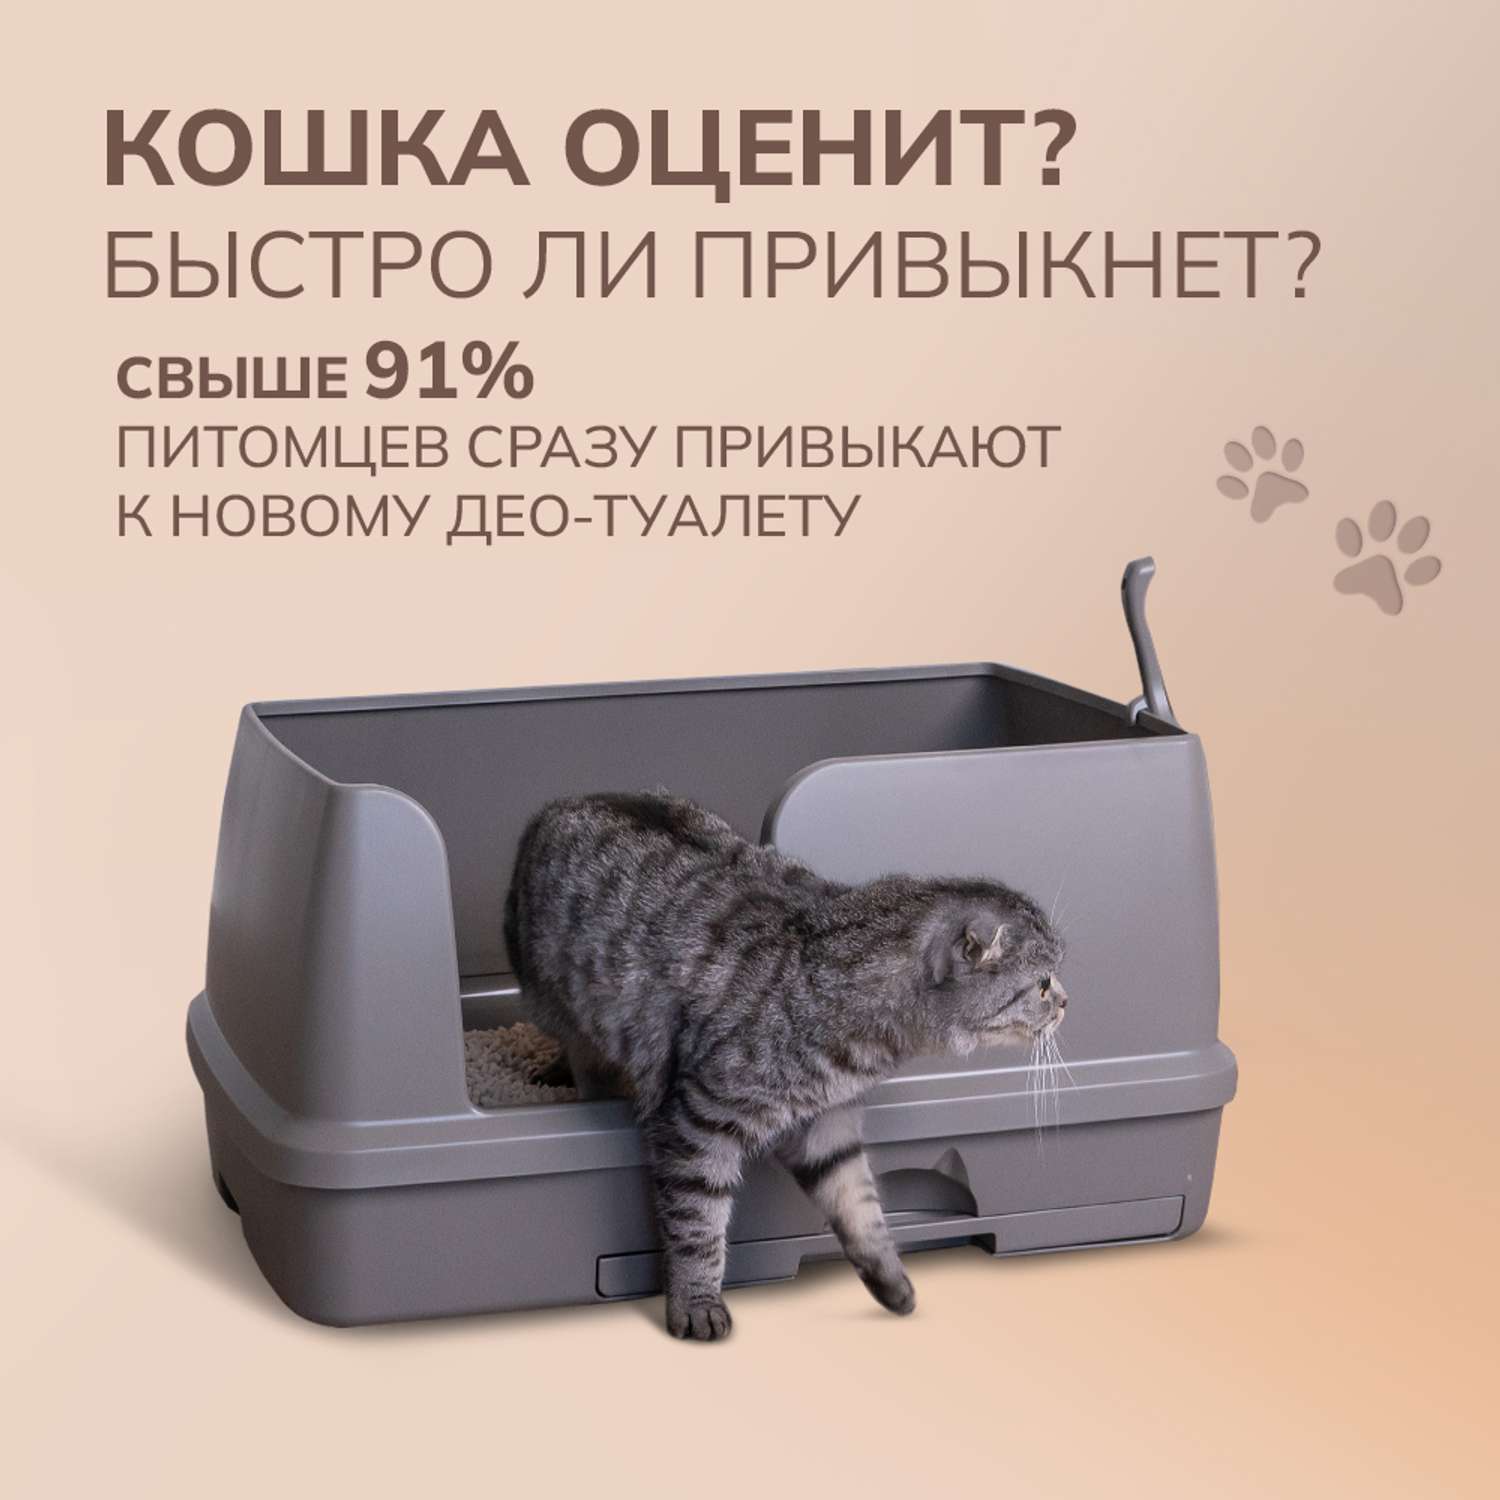 Cистемный туалет DeoToilet Unicharm Для крупных кошек открытого типа с высокими бортами цвет мокко набор - фото 8